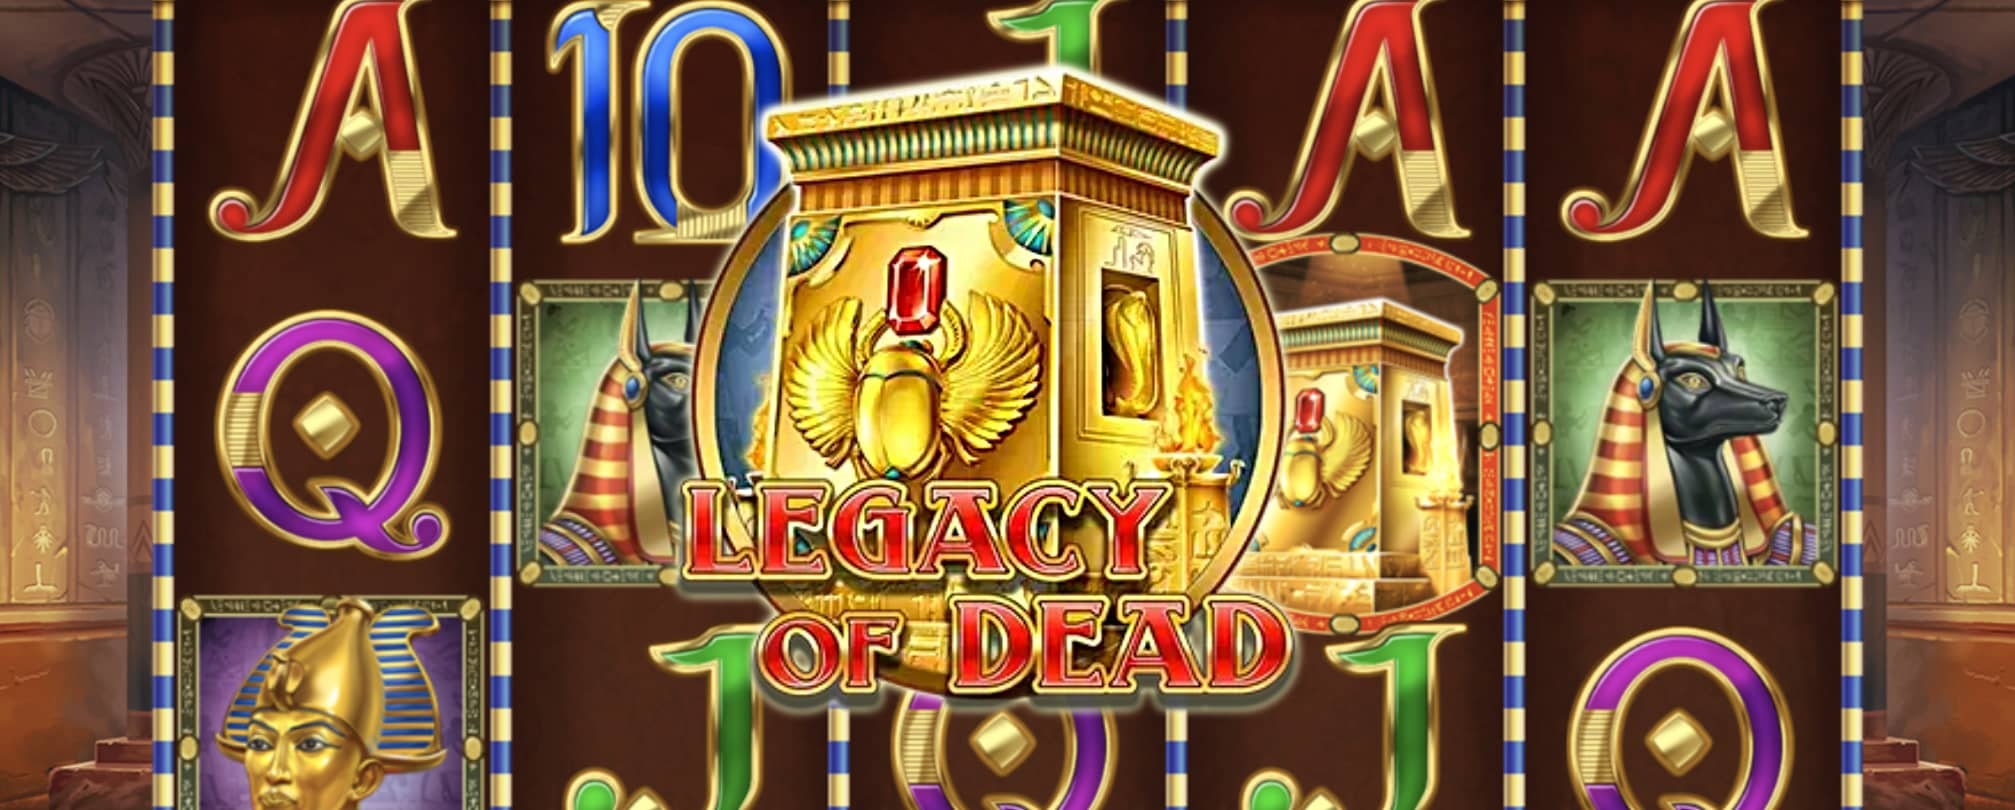 Tous les secrets pour gagner à Legacy of Dead